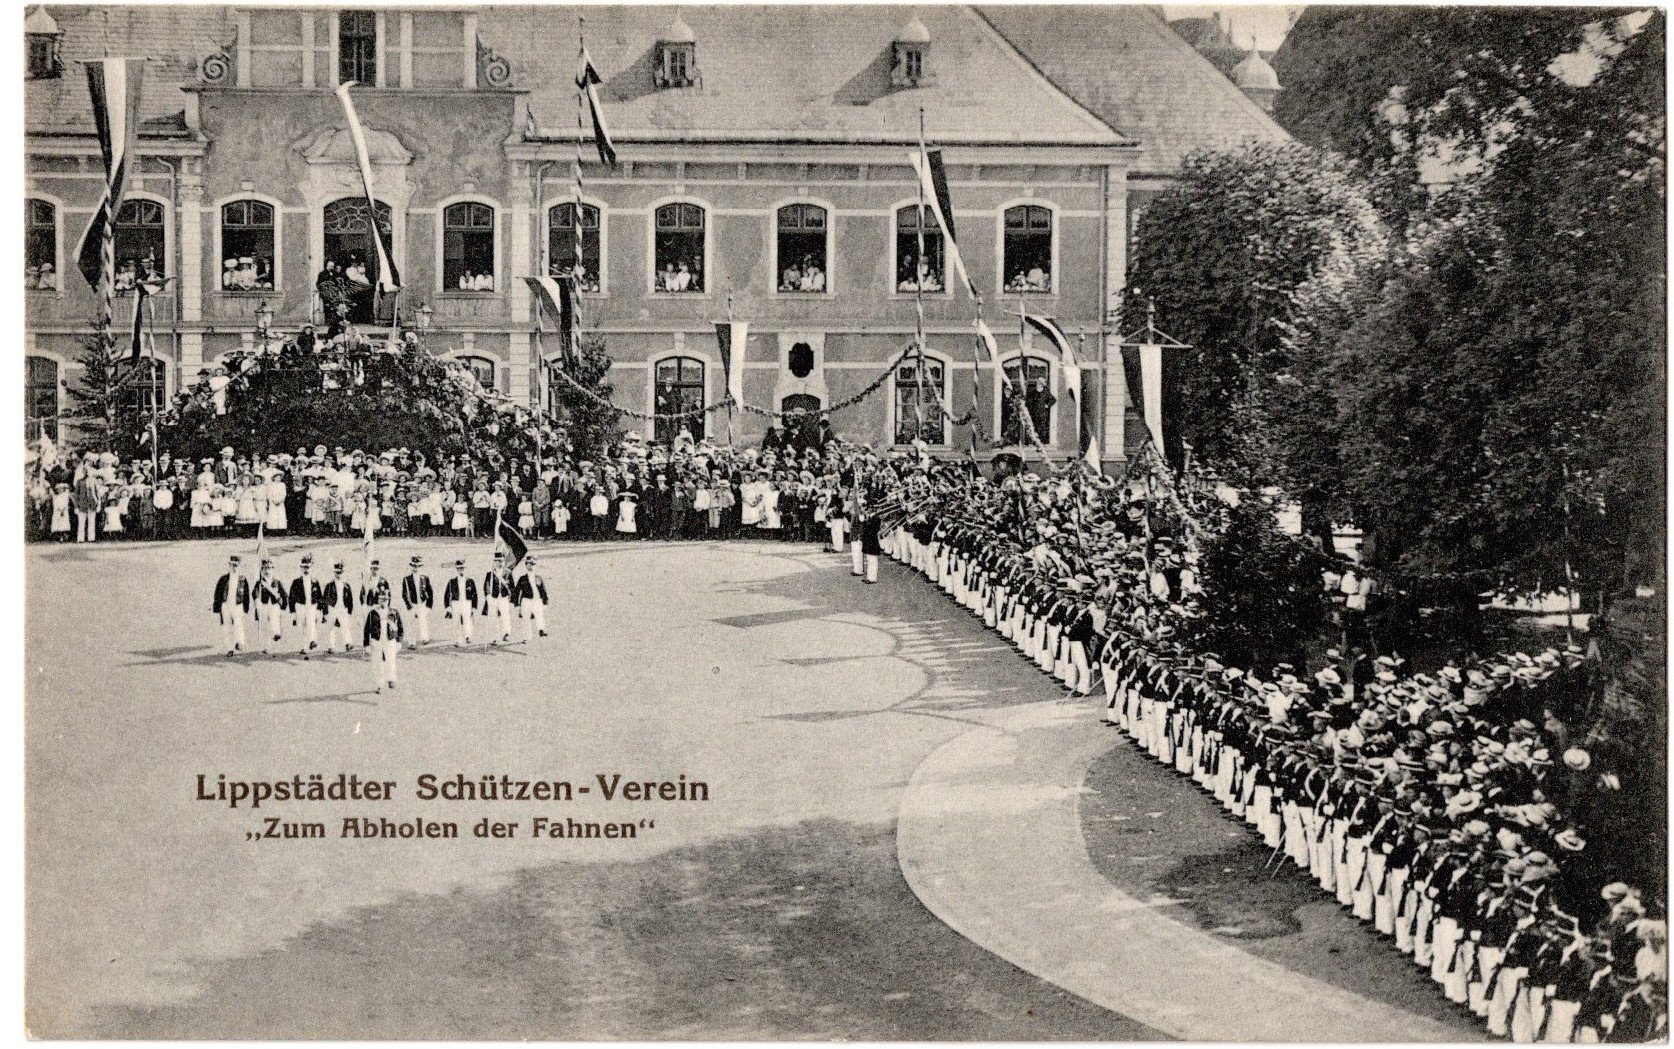 Postkarte : Lippstädter Schützenverein Zum Abholen der Fahnen (Stadtmuseum Lippstadt RR-F)